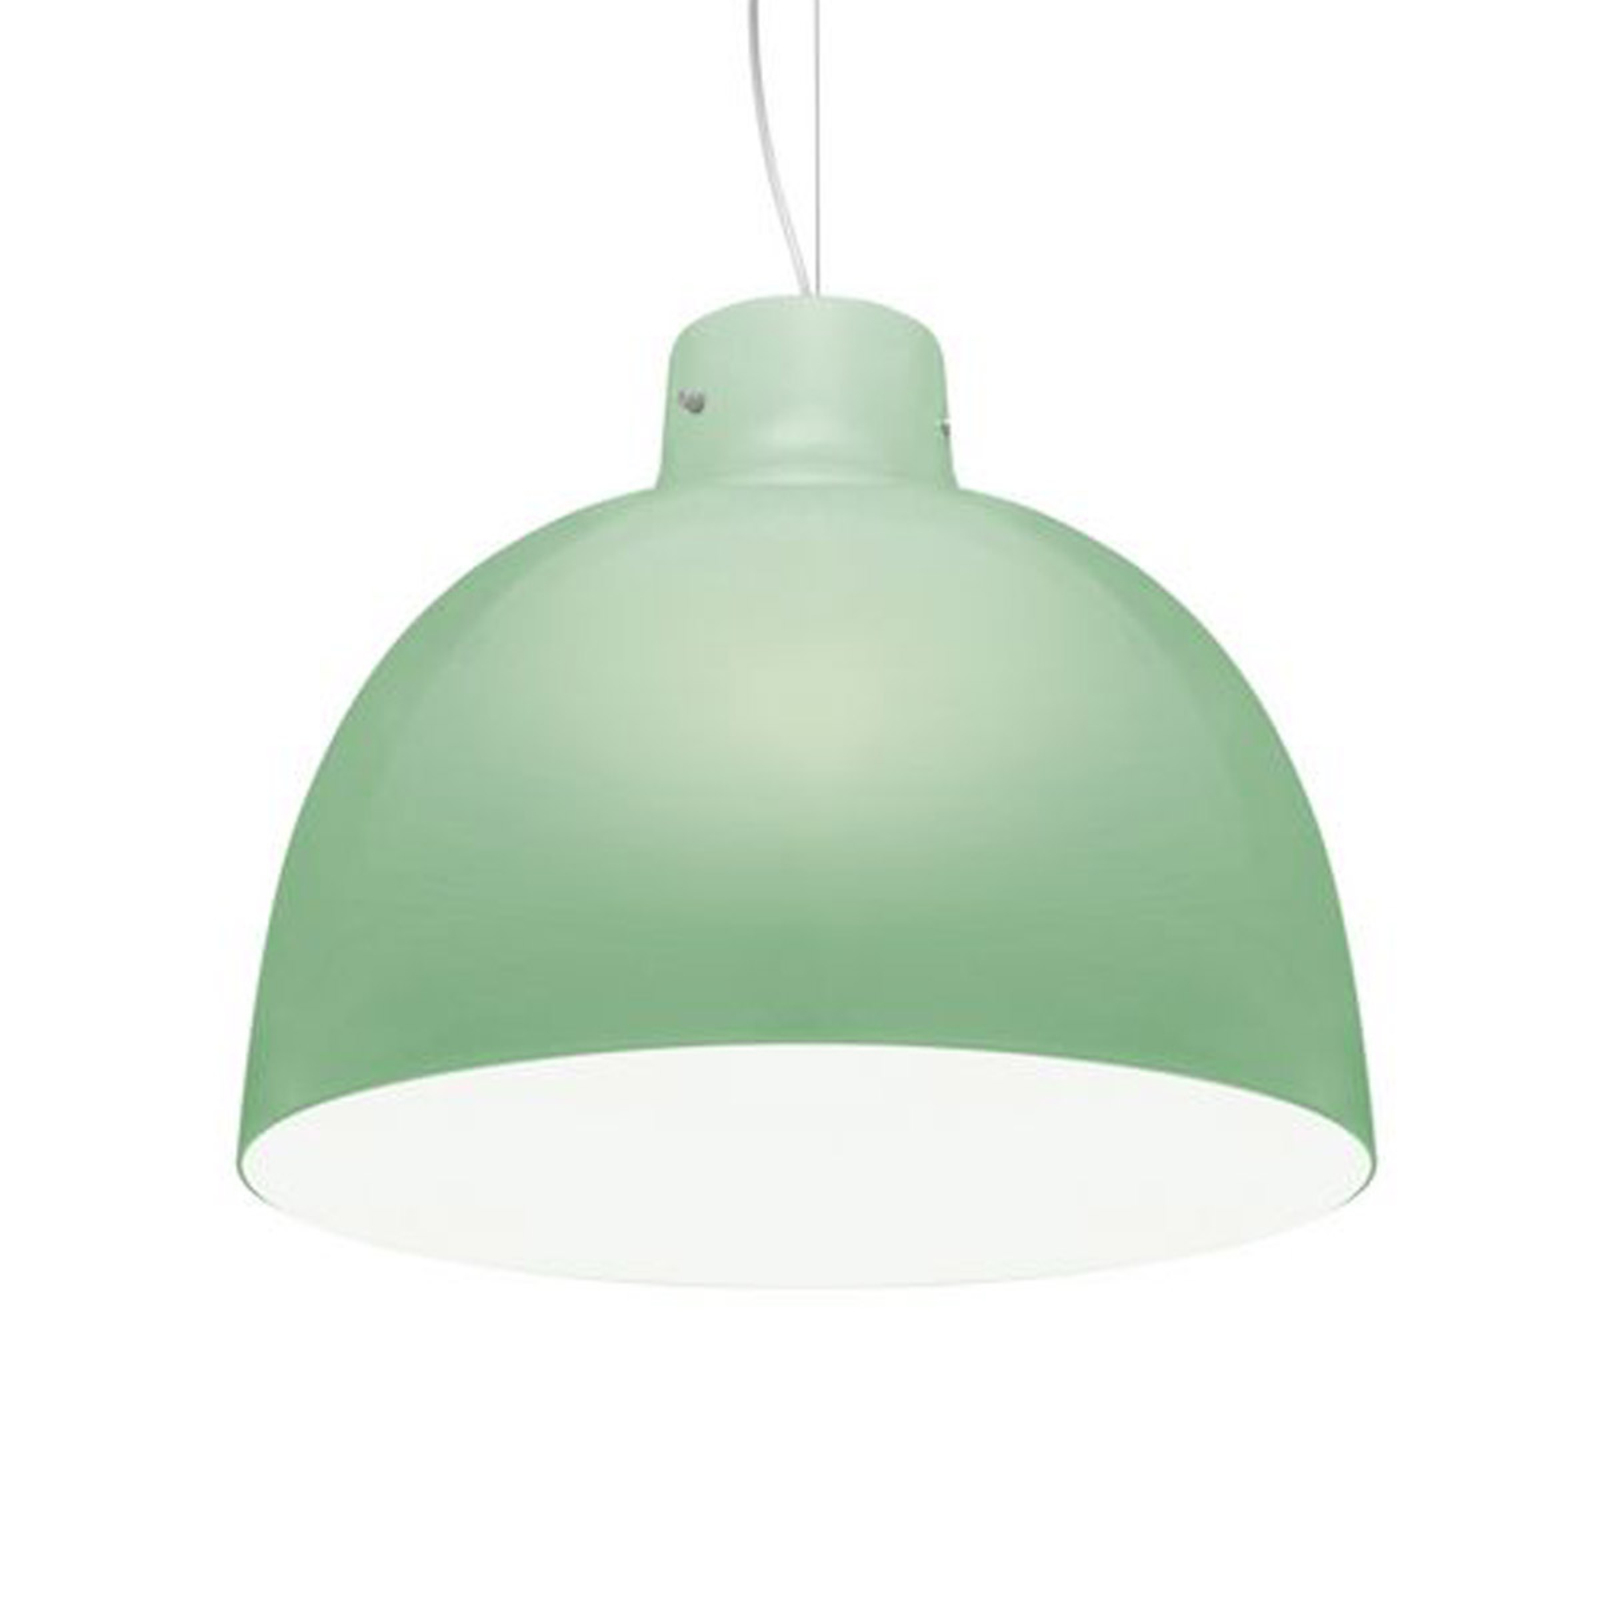 Kartell Bellissima hanglamp, groen glanzend